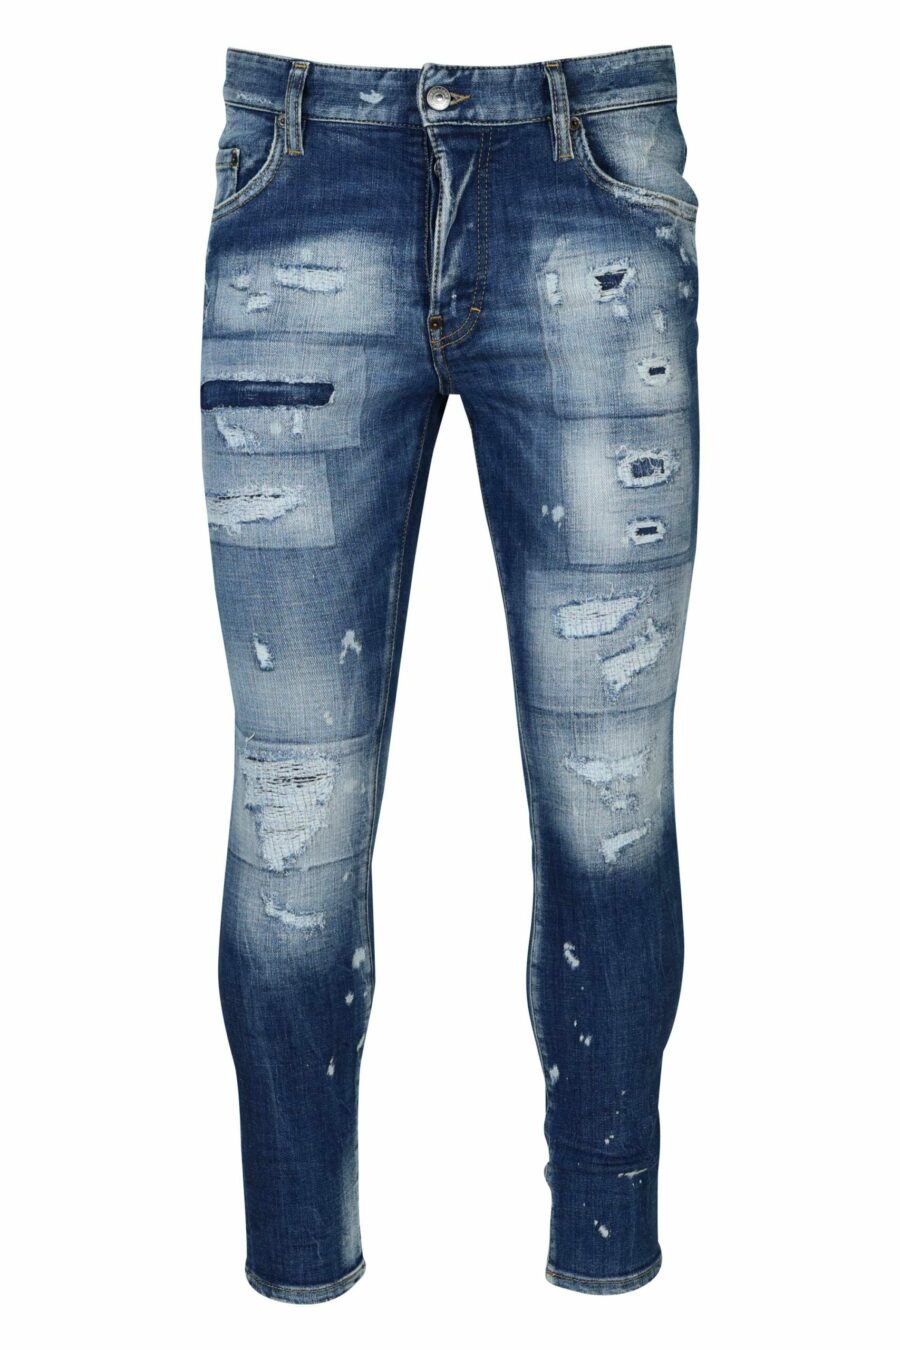 Blaue "super twinky jean" Jeans mit Rissen - 8054148339029 skaliert